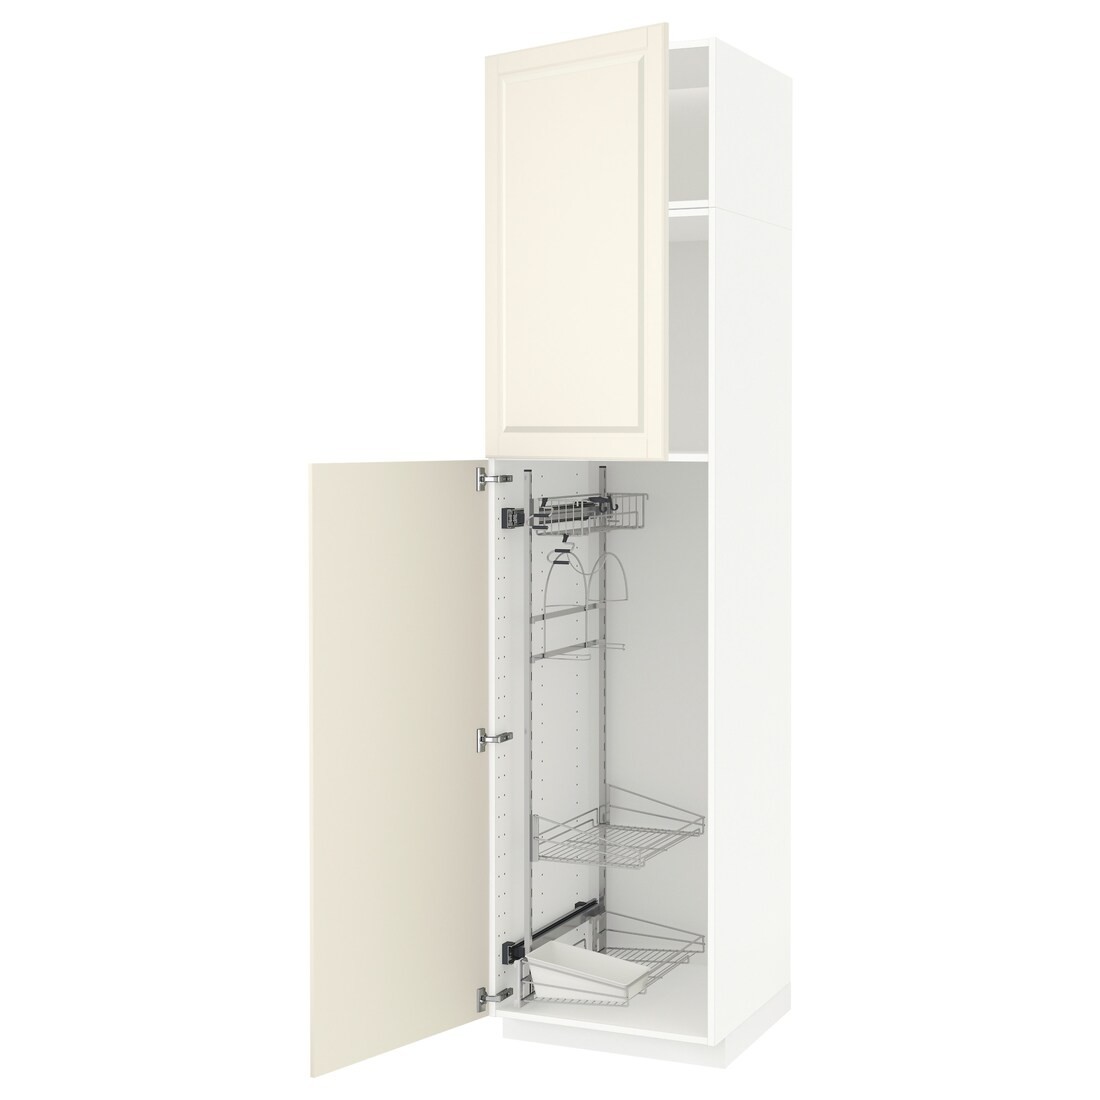 IKEA METOD МЕТОД Высокий шкаф с отделением для аксессуаров для уборки, белый / Bodbyn кремовый, 60x60x240 см 29466178 294.661.78